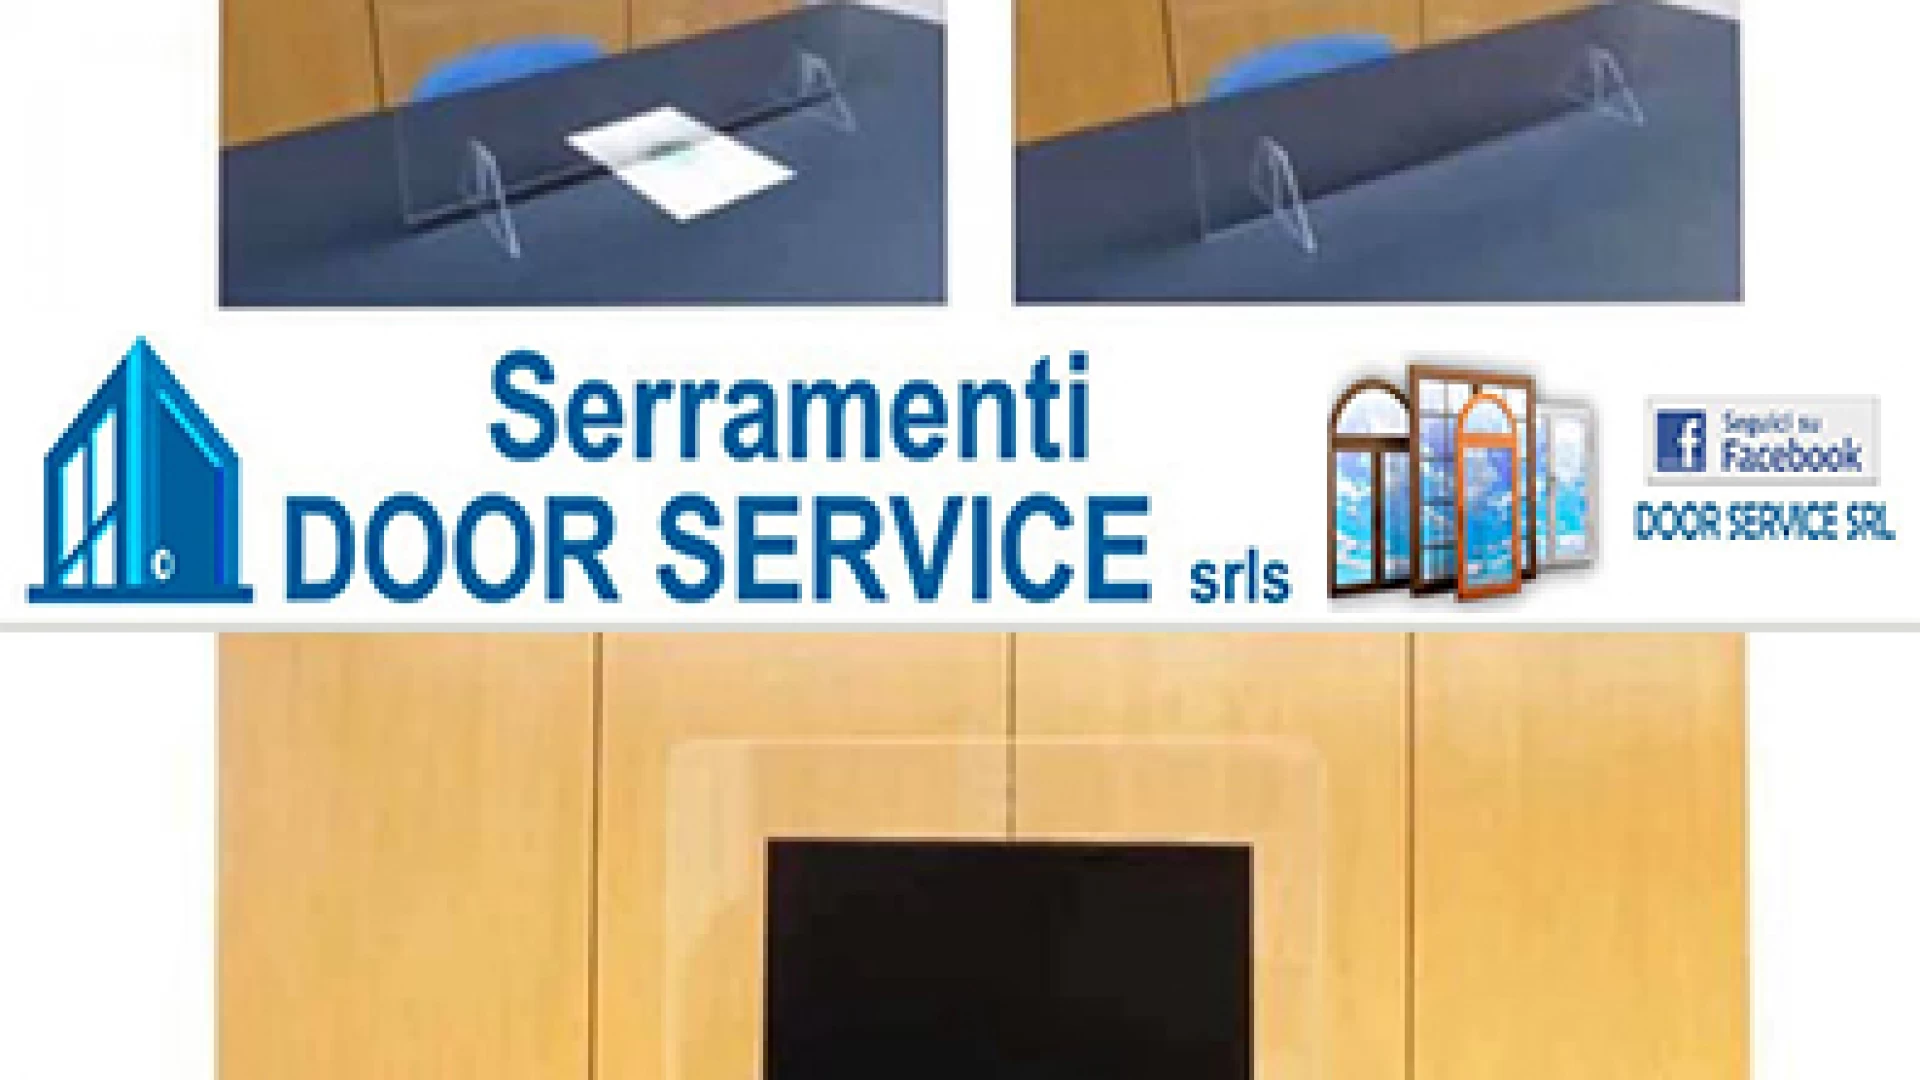 Door Service Serramenti affronta l’emergenza Covid-19. Al via l’installazione delle barriere anti-contagio.